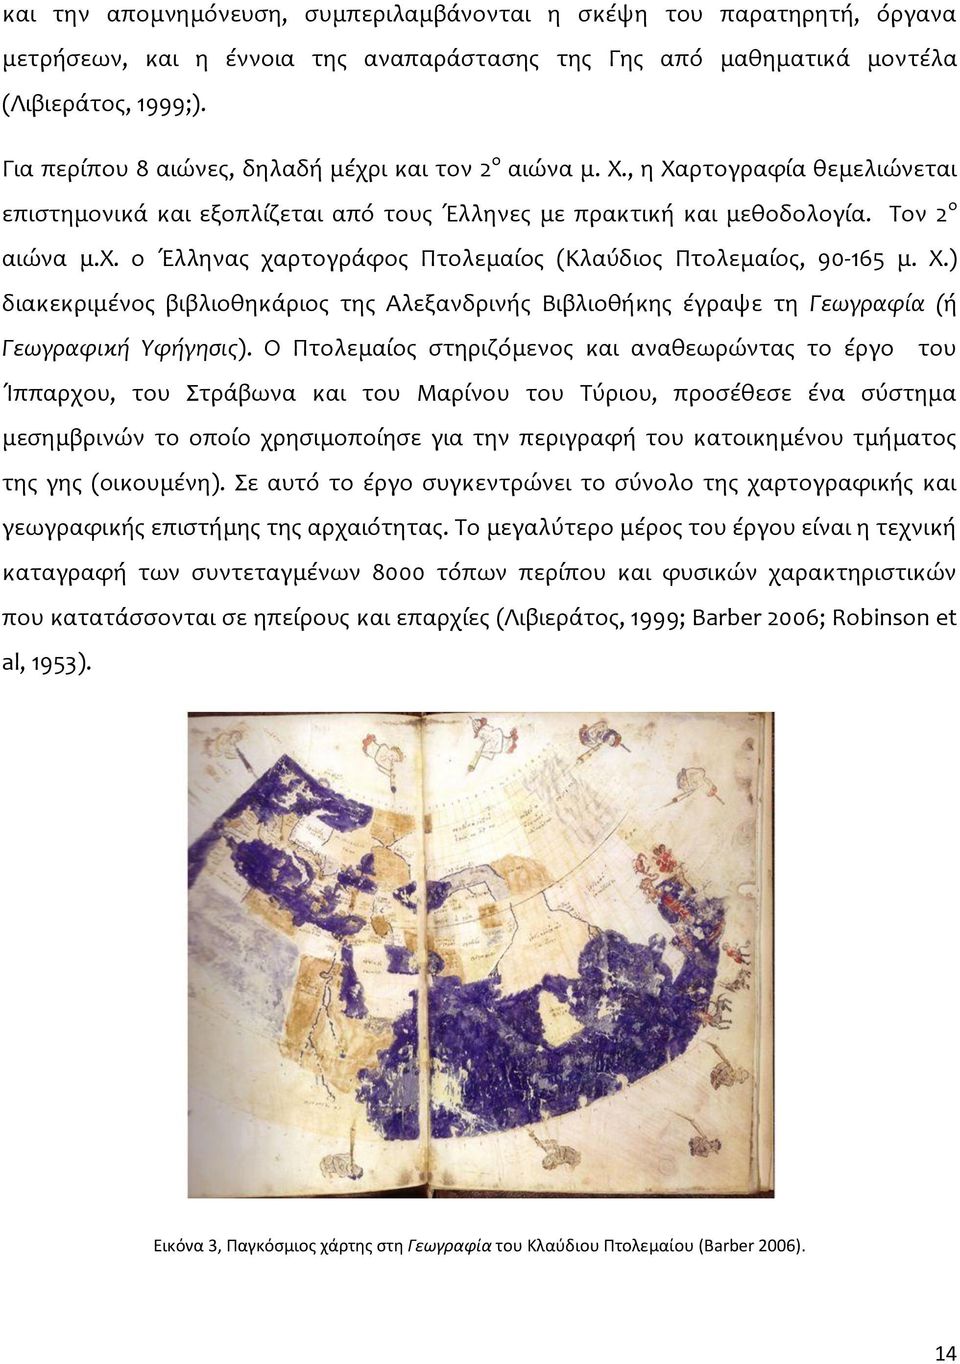 Χ.) διακεκριμένος βιβλιοθηκάριος της Αλεξανδρινής Βιβλιοθήκης έγραψε τη Γεωγραφία (ή Γεωγραφική Υφήγησις).